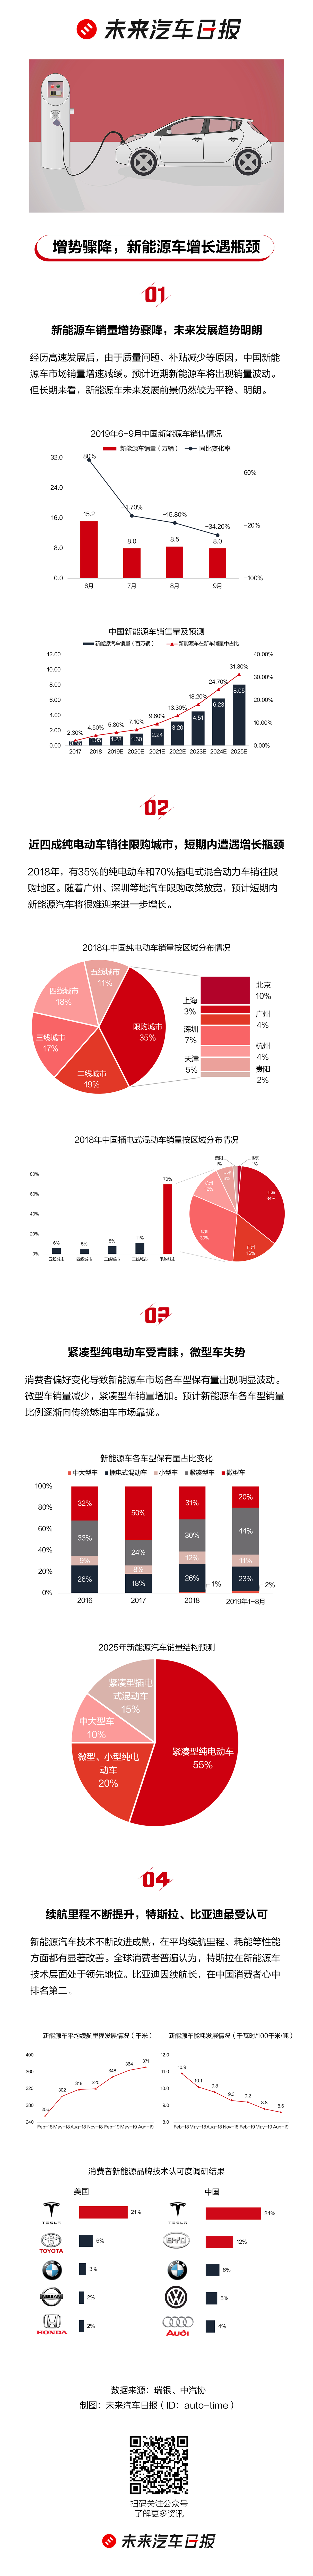 卡门内参|Wei Lai shares on a roller coaster; Lifan is hard to sail; European giant PSA loses China